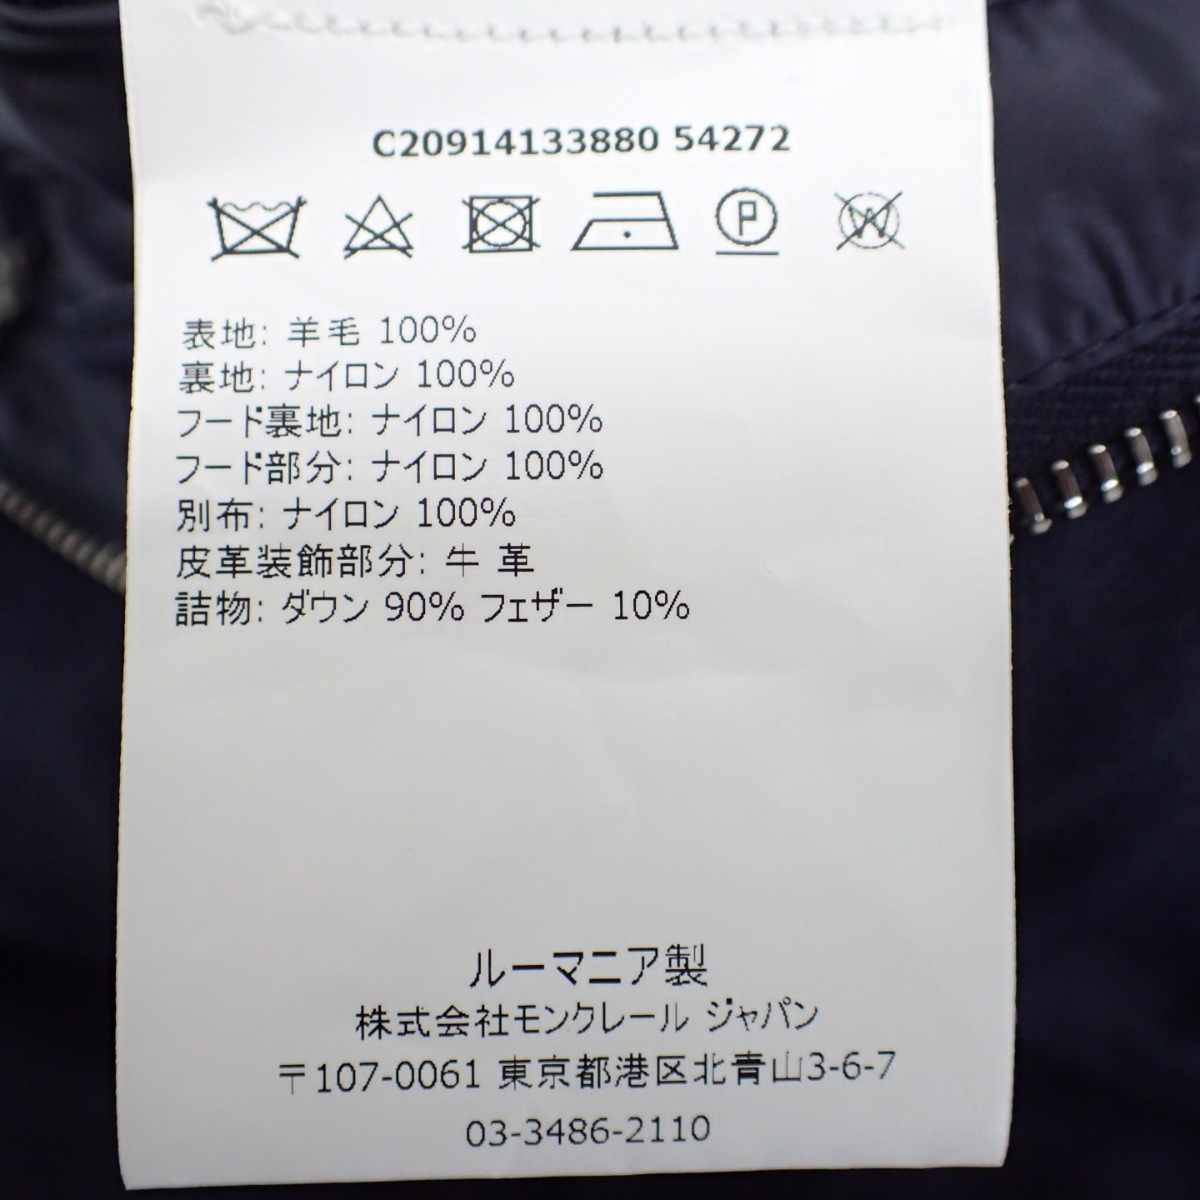 高級衣類専門クリーニング店におけるダウンのお手入れ費用相場は4,000～5,000円